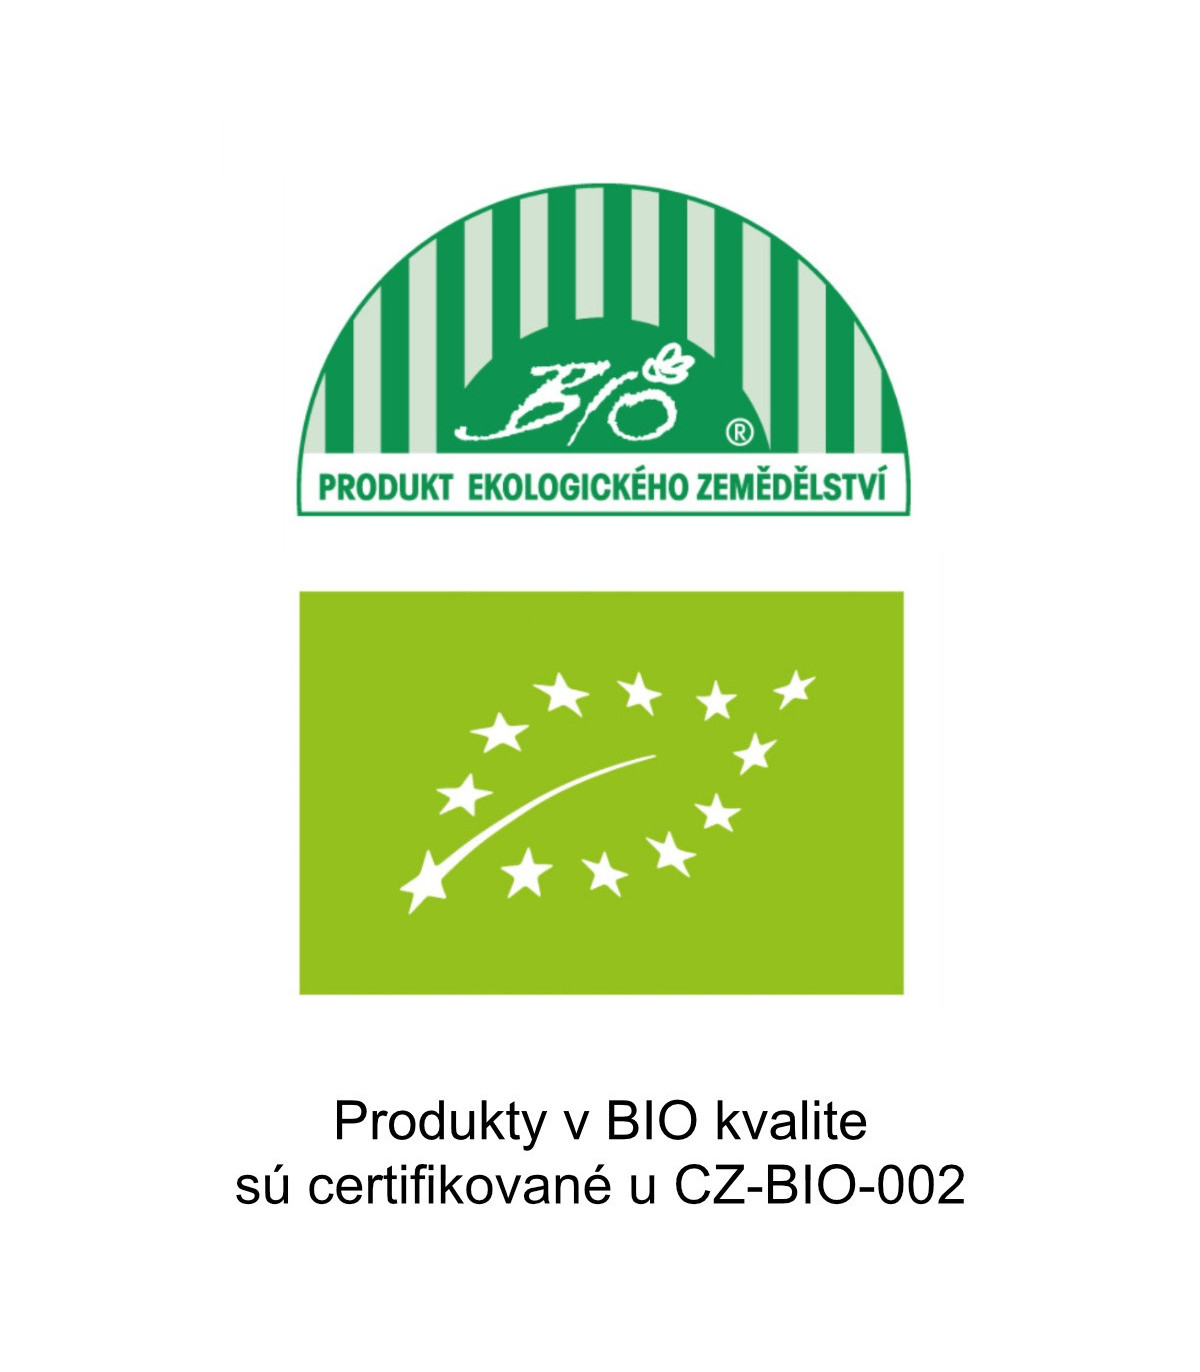 Produkty v BIO kvalite
sú certifikované u CZ-BIO-002